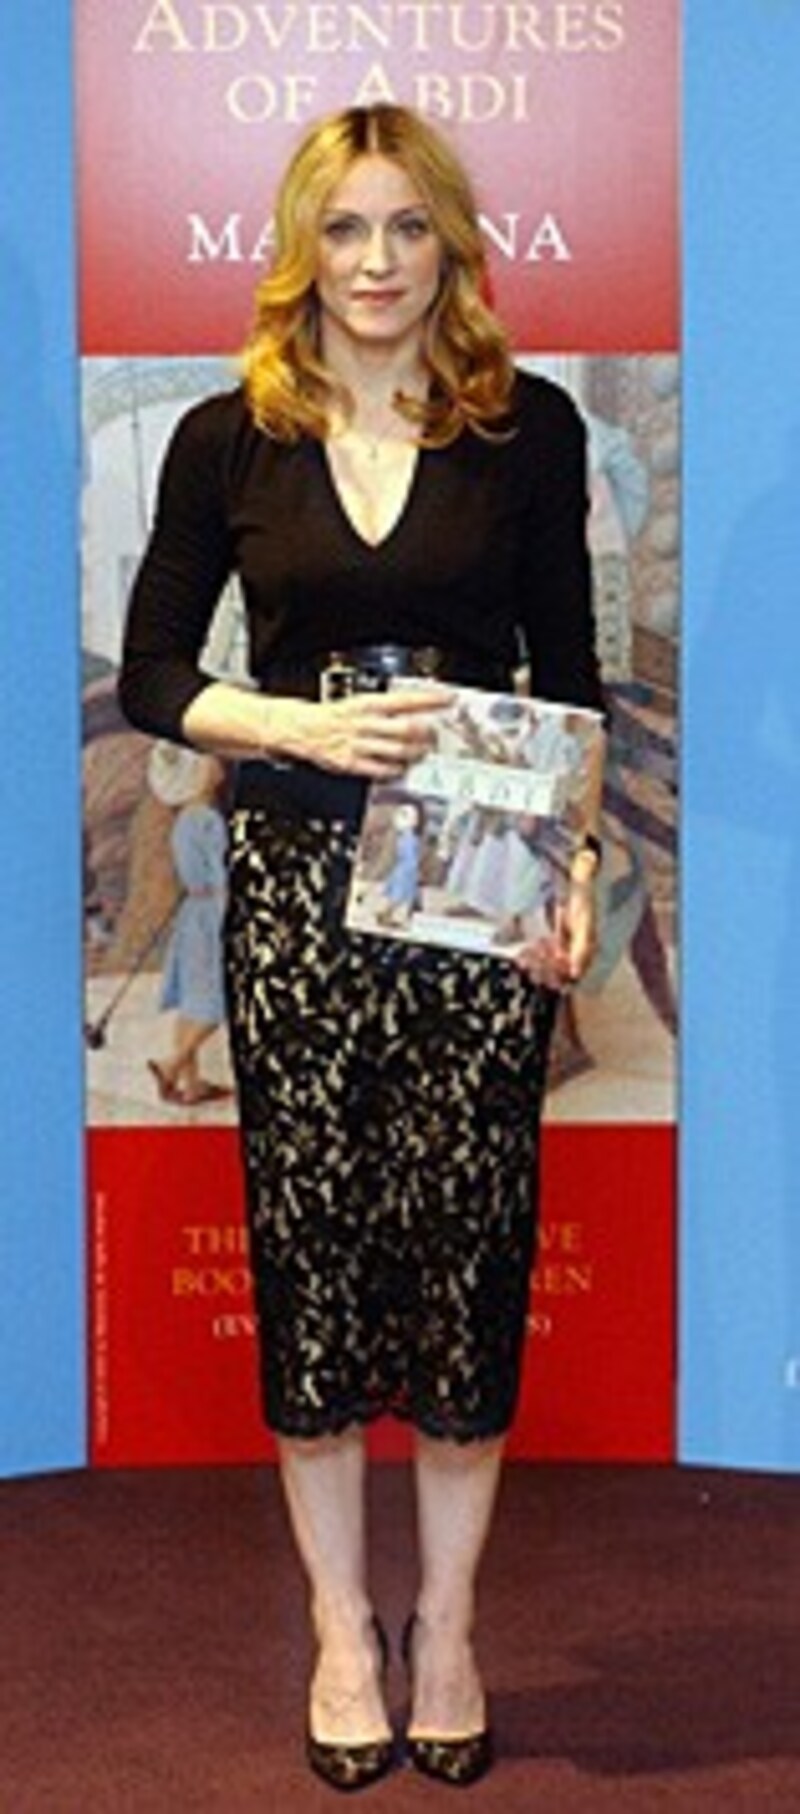 Kritiker können Madonnas Kinderbüchern nicht wirklich etwas abgewinnen. (Bild: Andy Butterton/EPA/picturedesk.com)